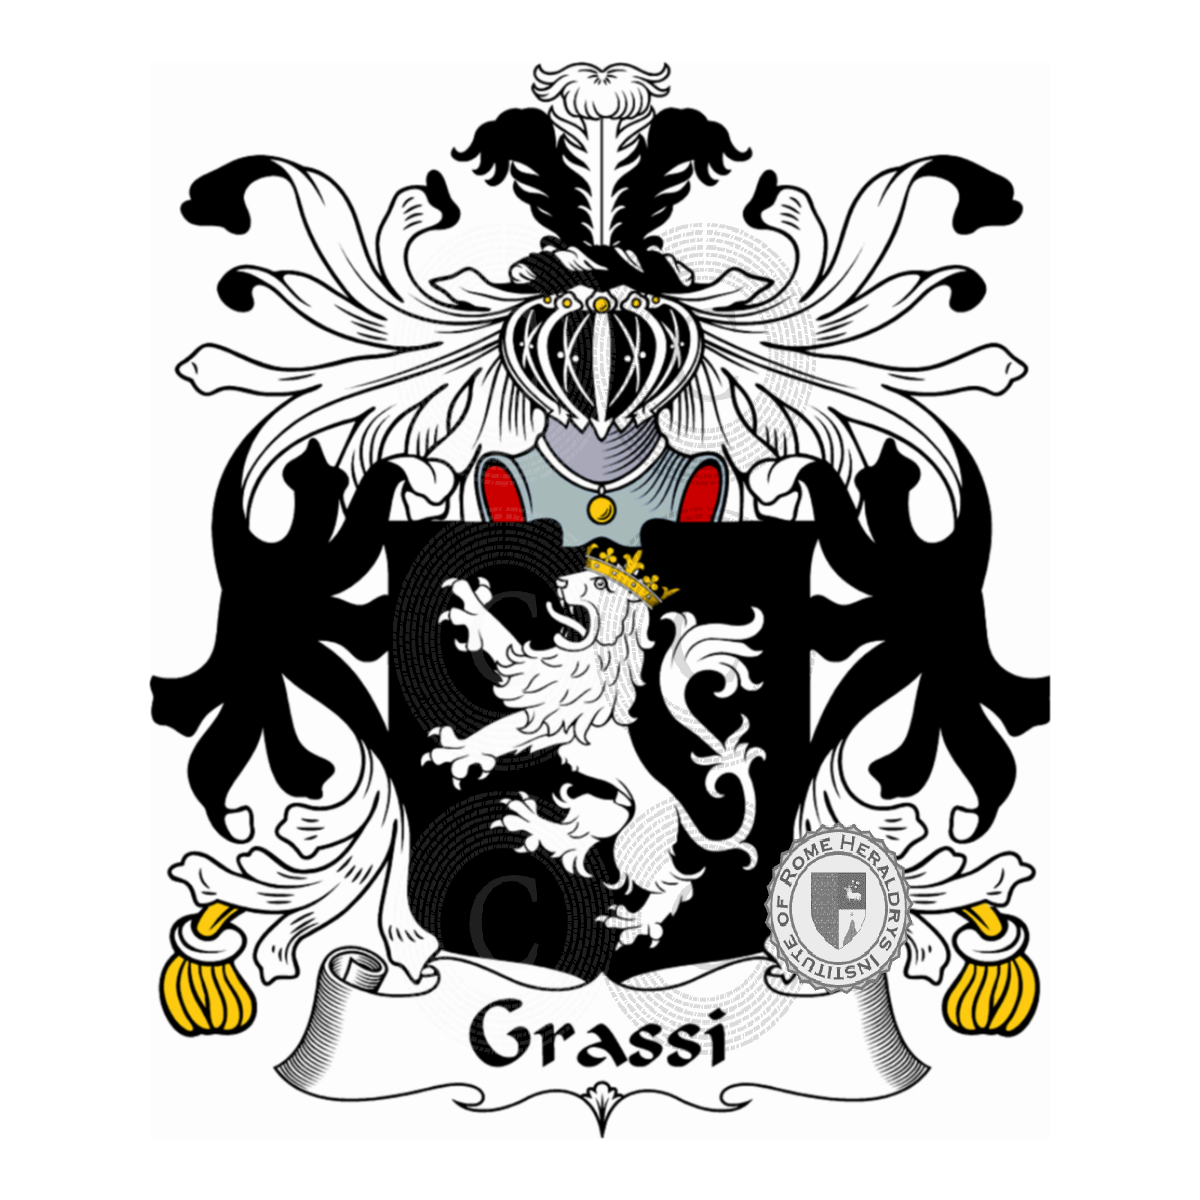 Brasão da famíliaGrassi, Crassi,de Grassi,de Grassis,Grassa